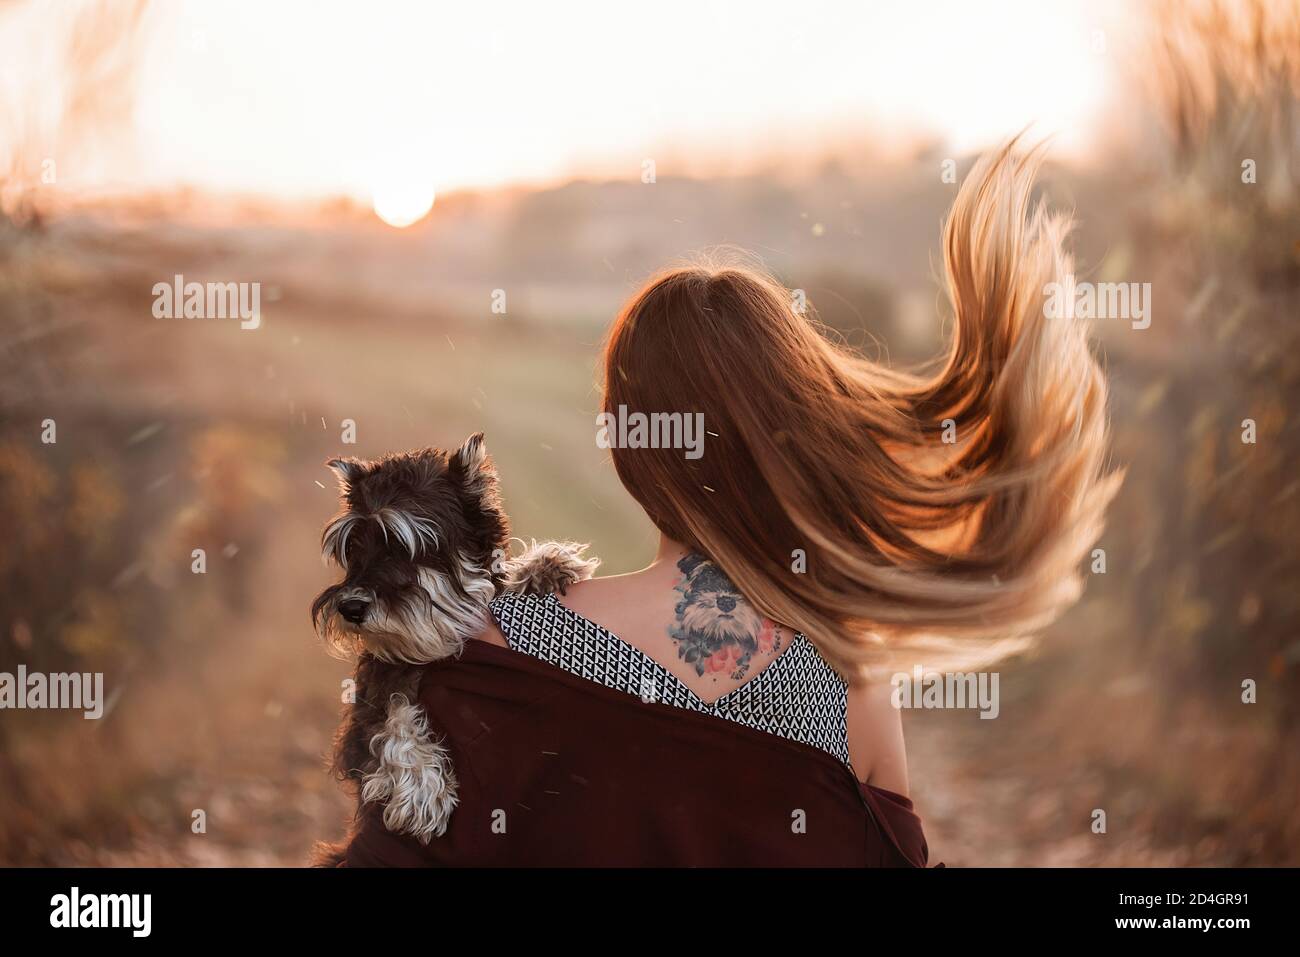 Ein blondes Mädchen mit flatternden Haaren steht auf ihrem Rücken mit dem Tattoo ihres schwarzen Schnauzer Hundes, den sie in ihrem Arm hält. PET-Hochformat. Herbst Stockfoto